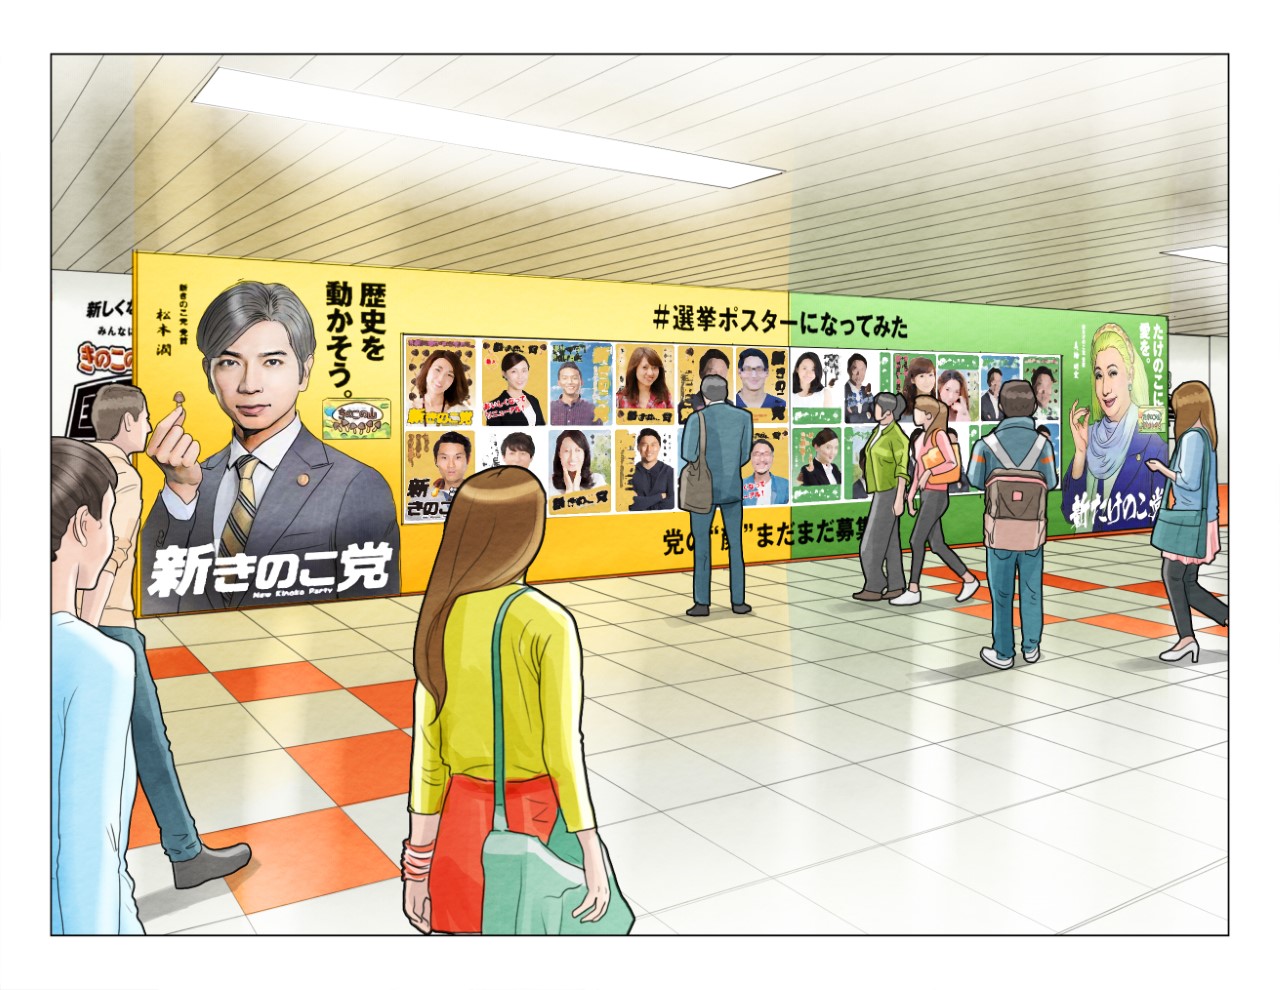 松本潤＆美輪明宏の巨大ポスターも登場！「きのこの山・たけのこの里」国民総選挙の投票イベントが新宿駅で開催